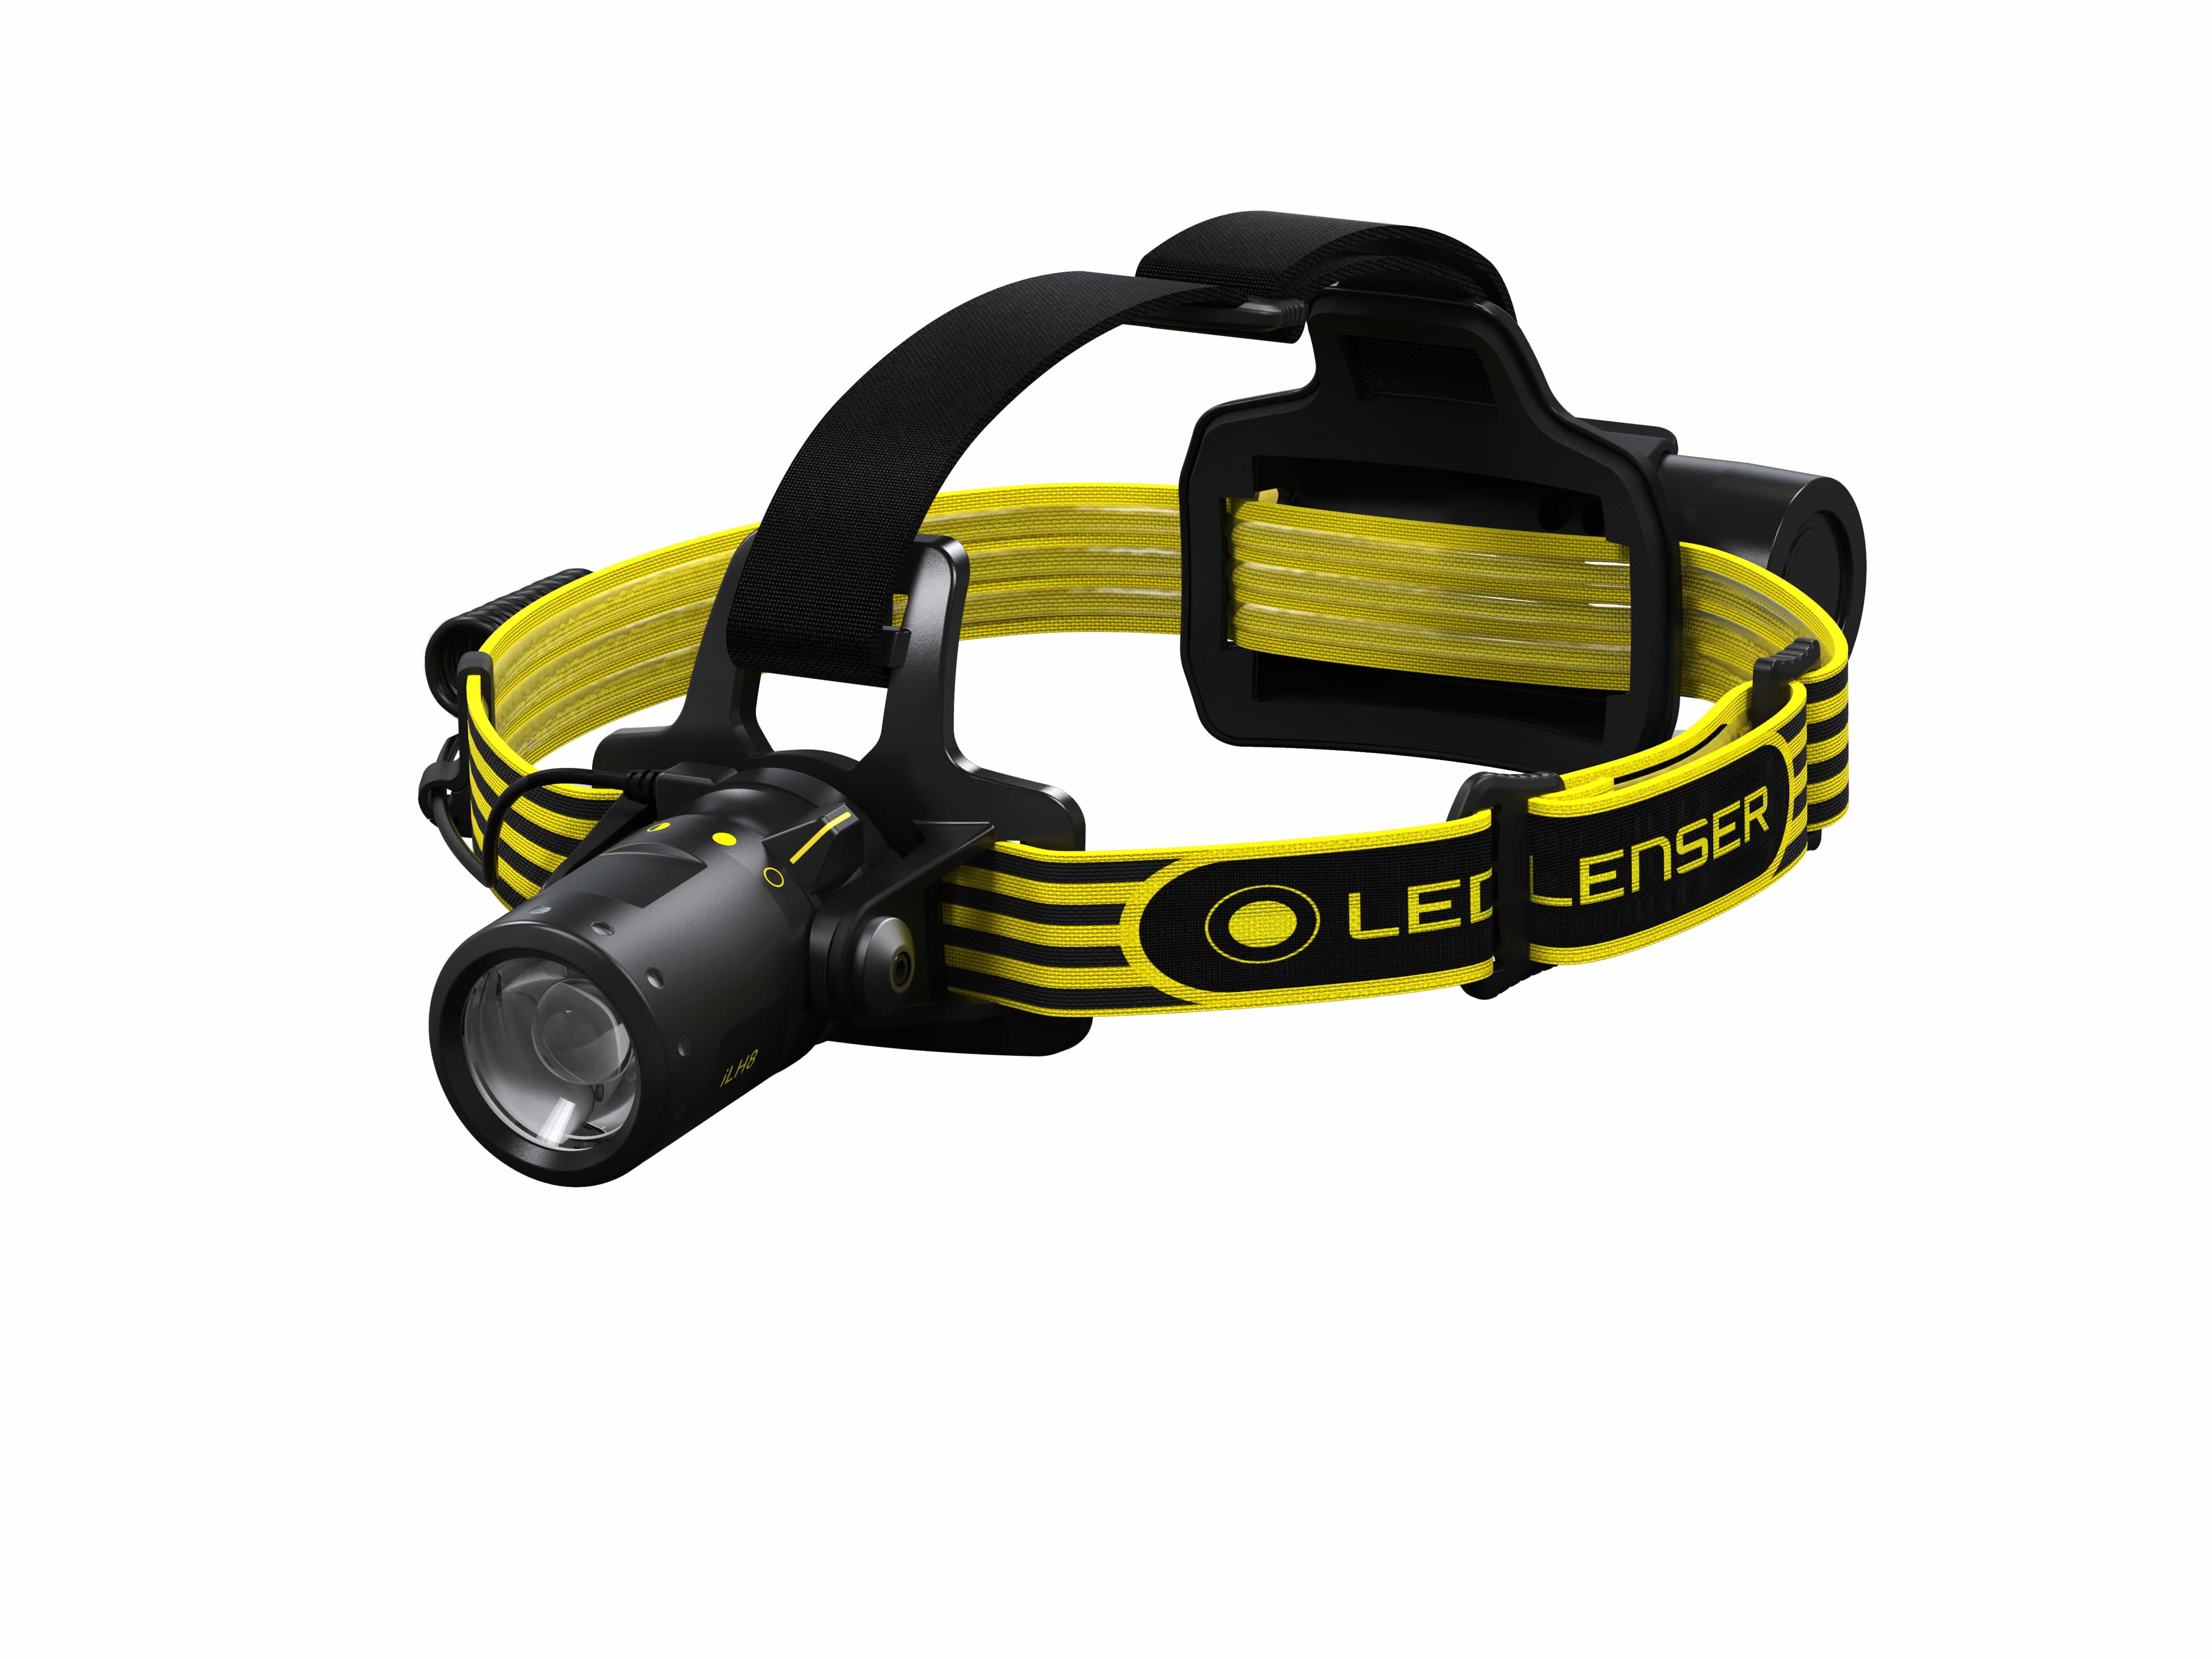 LED Lenser iLH8